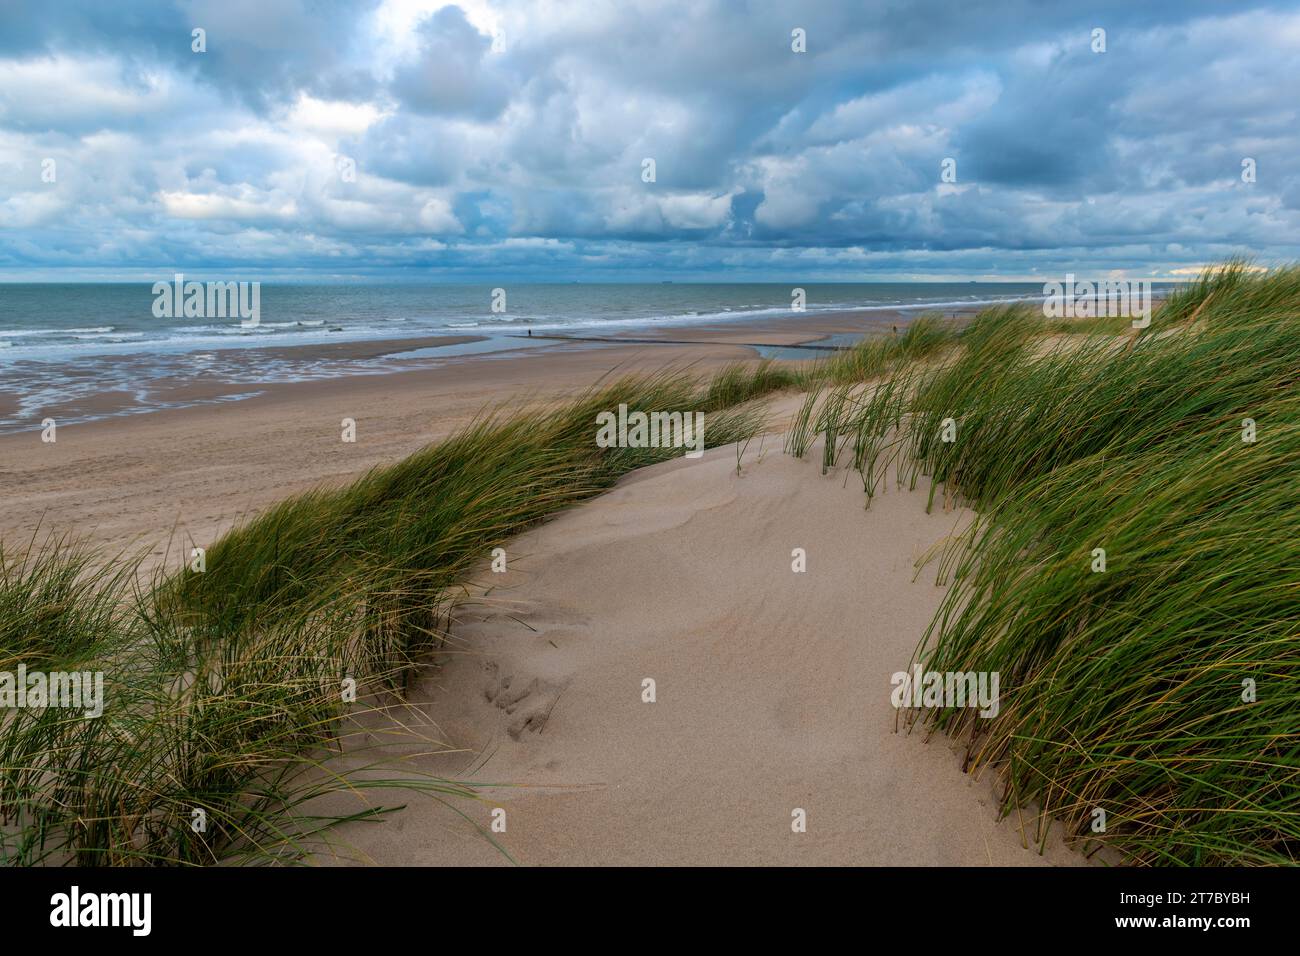 Dune di sabbia e spiaggia del Mare del Nord con cielo piovoso e suggestivo, Fiandre occidentali, Belgio. Foto Stock